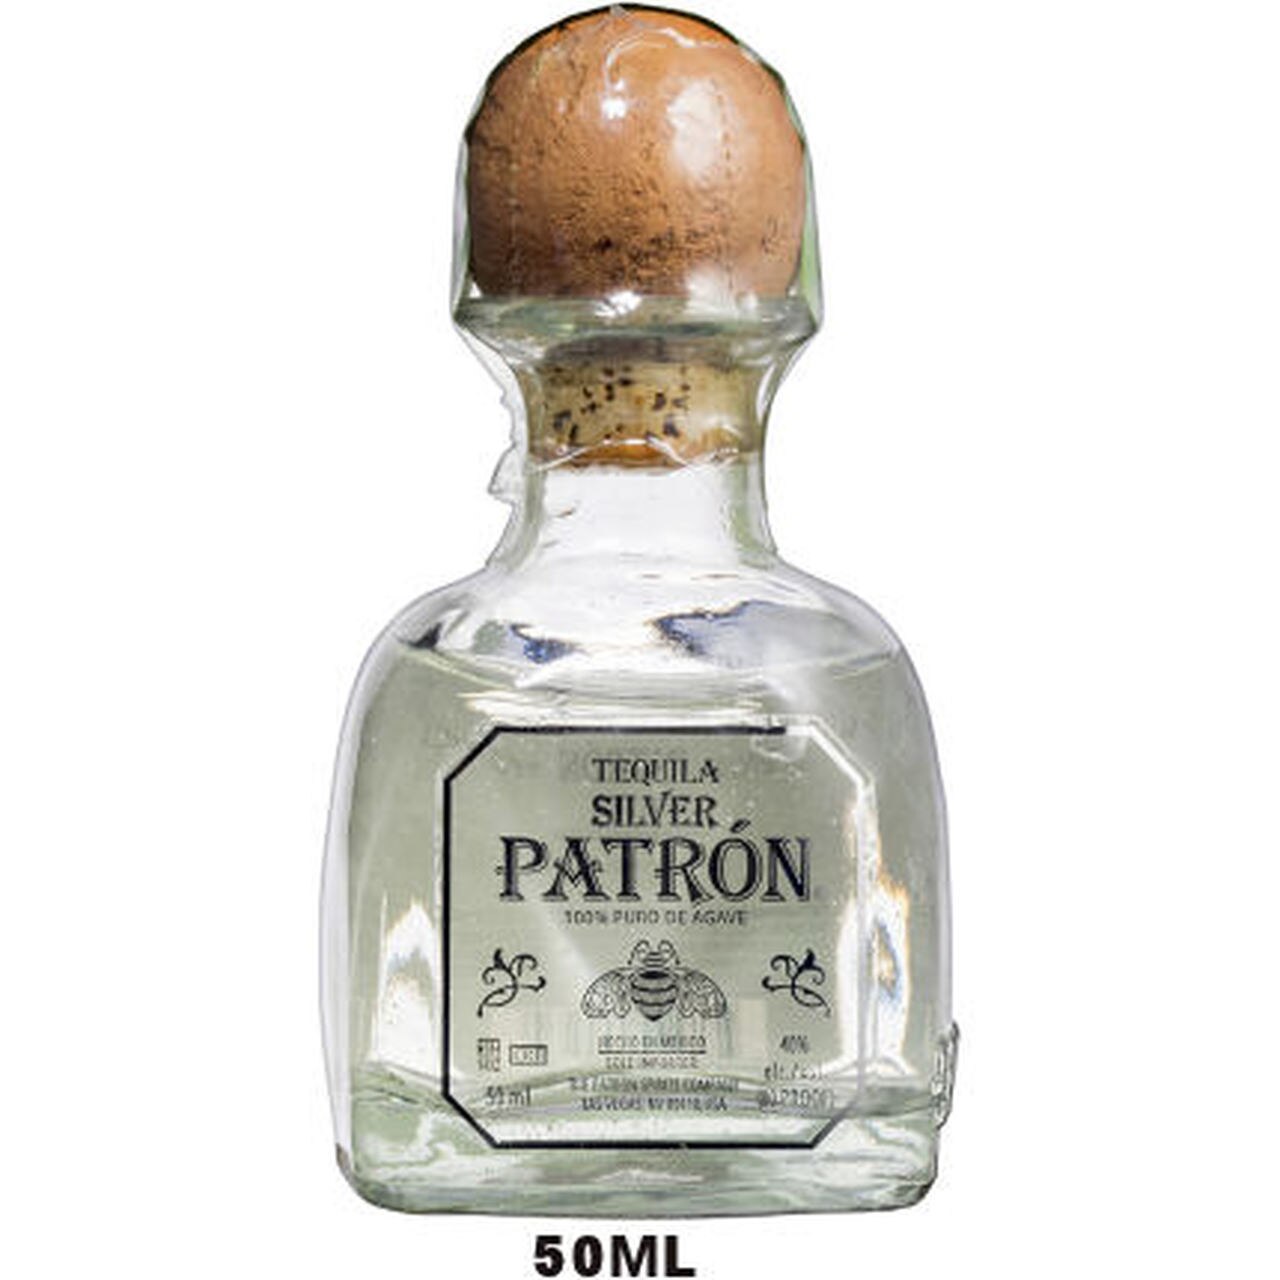 50ml Mini Patron Silver Tequila | Liquor Store Online